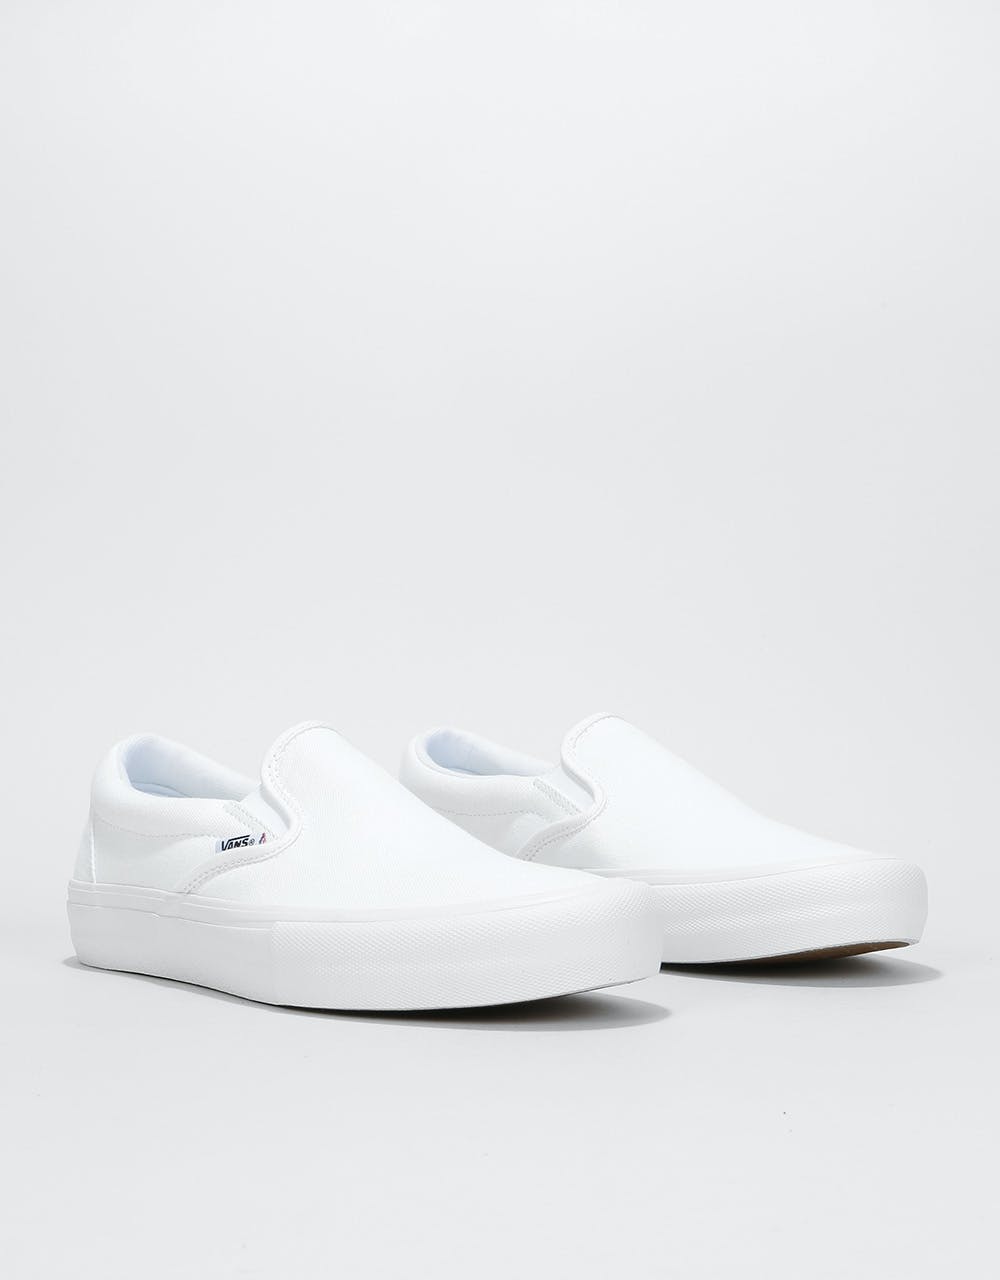 Vans Slip-On Pro Skate Shoes - White/White